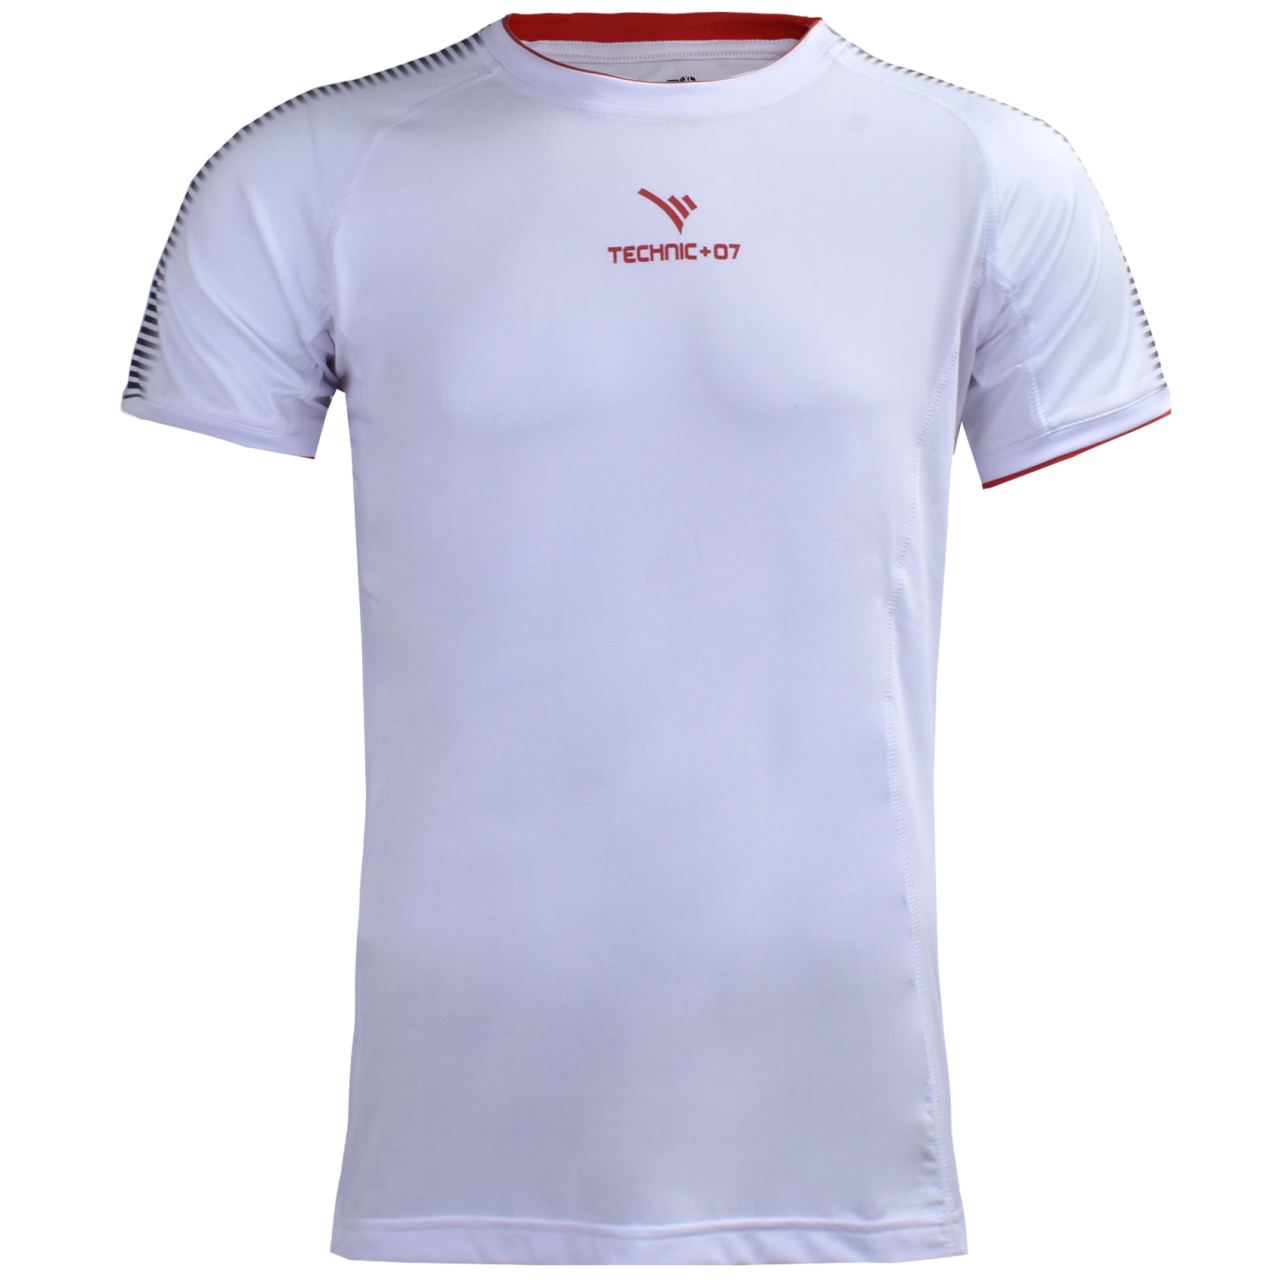 تی شرت ورزشی مردانه تکنیک پلاس 07 کد TS-132-SE-SO